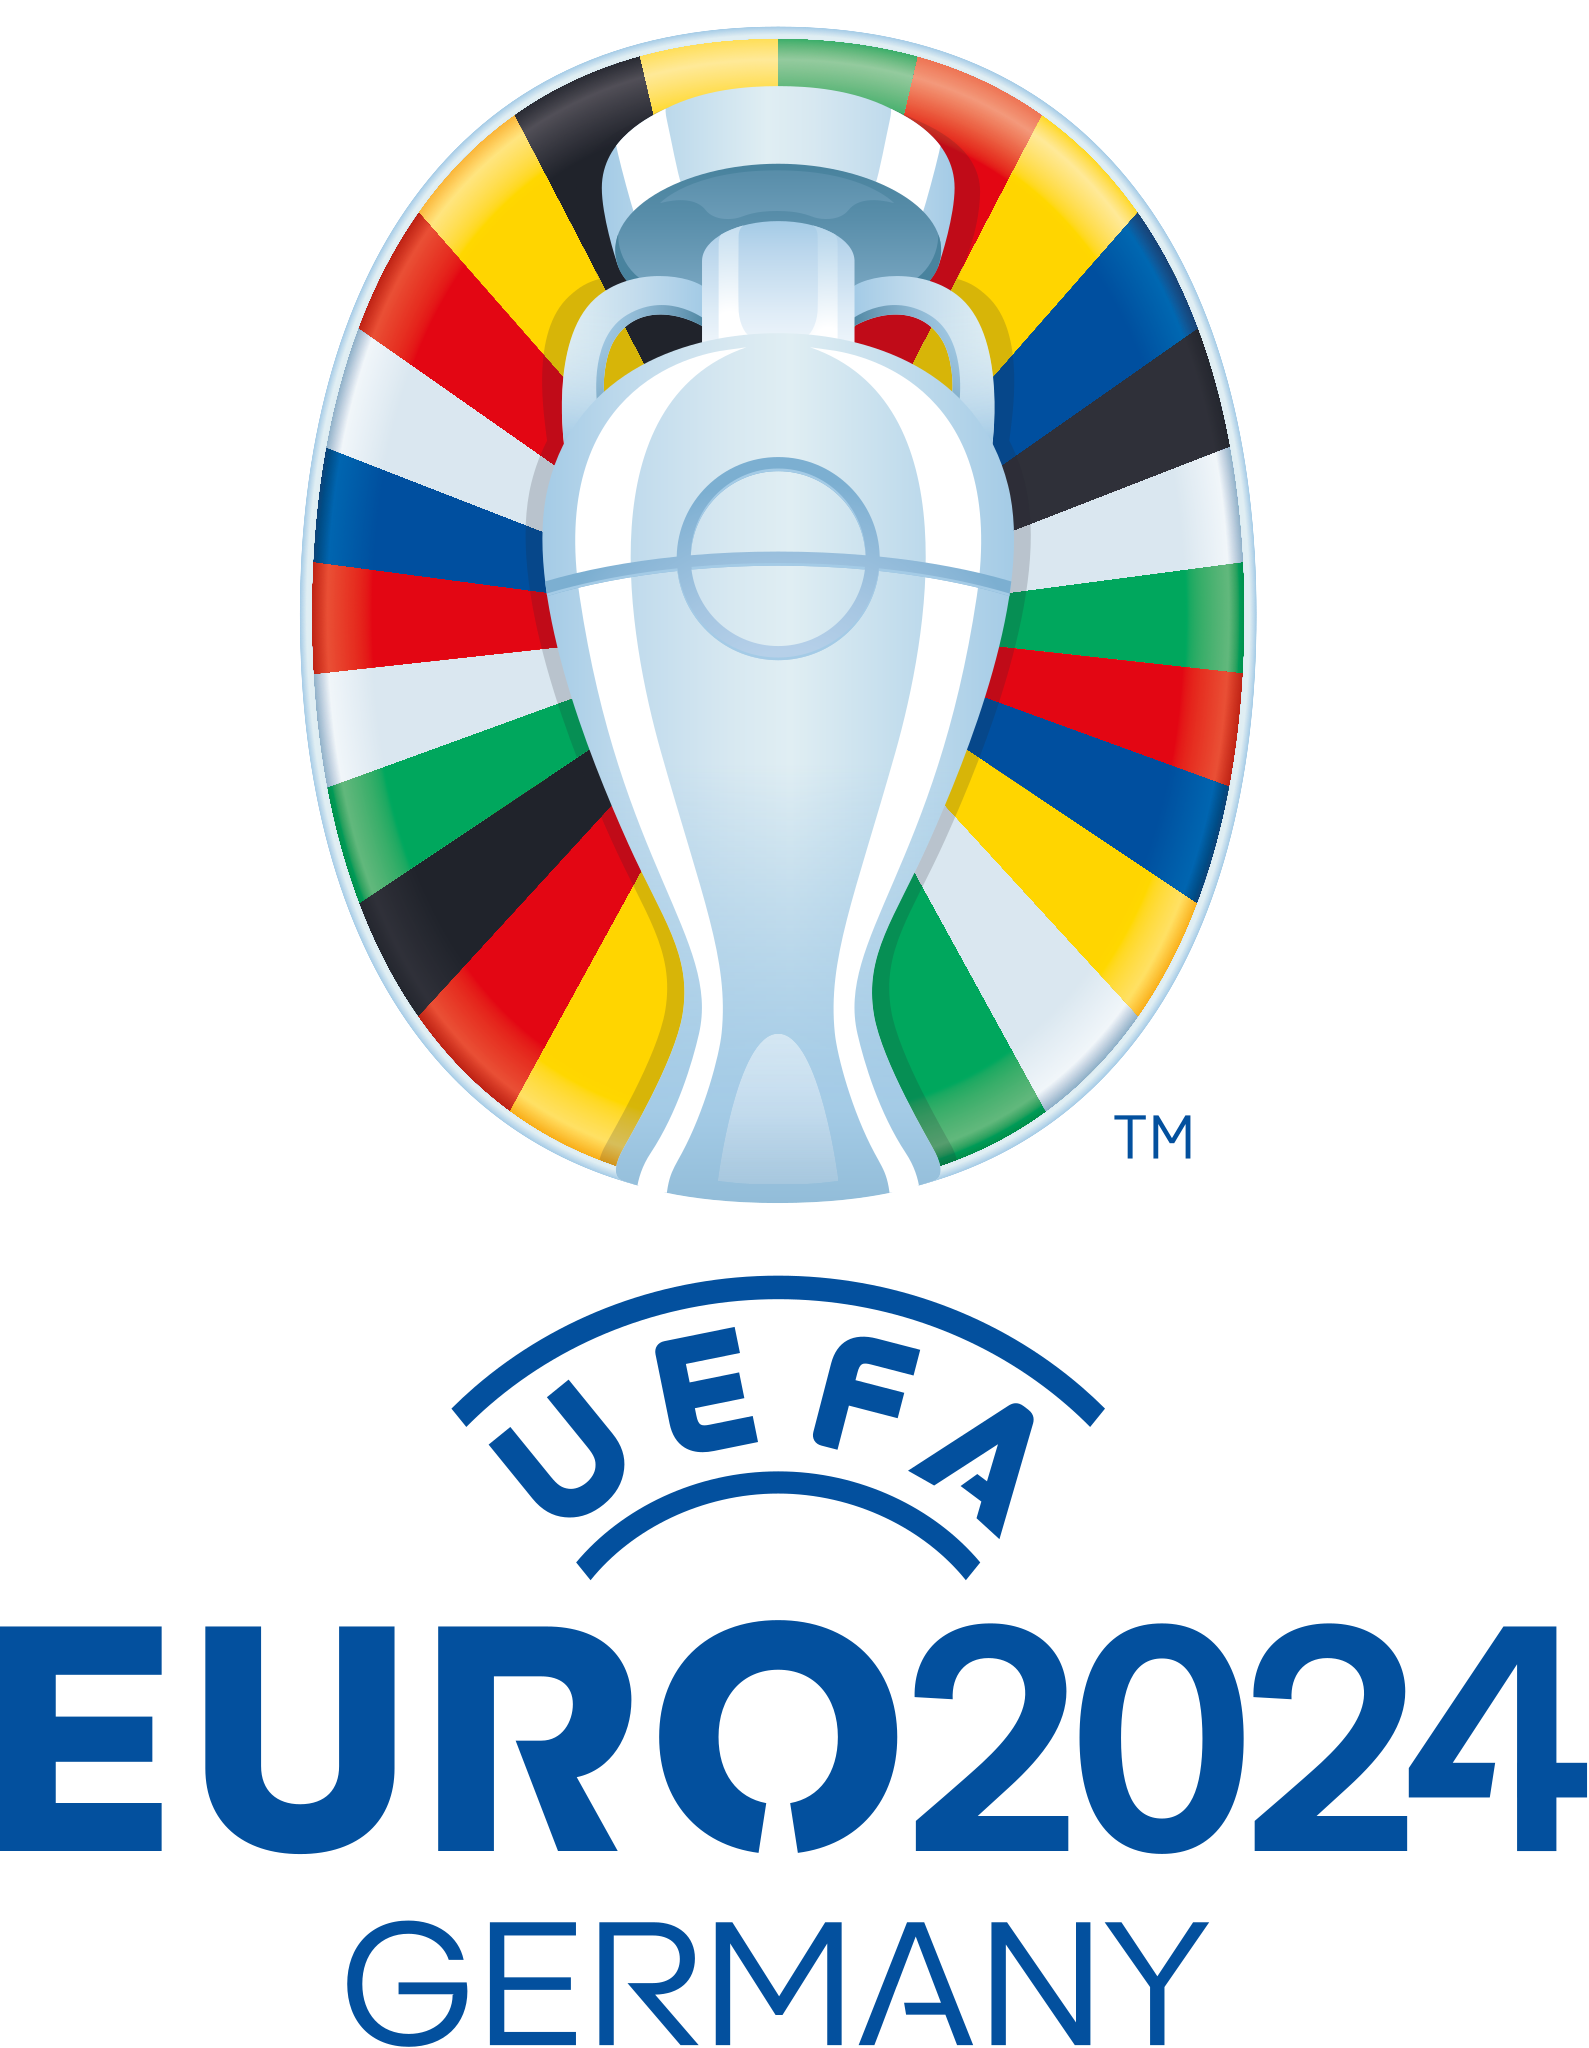 Campionato europeo di calcio 2024 - Wikipedia